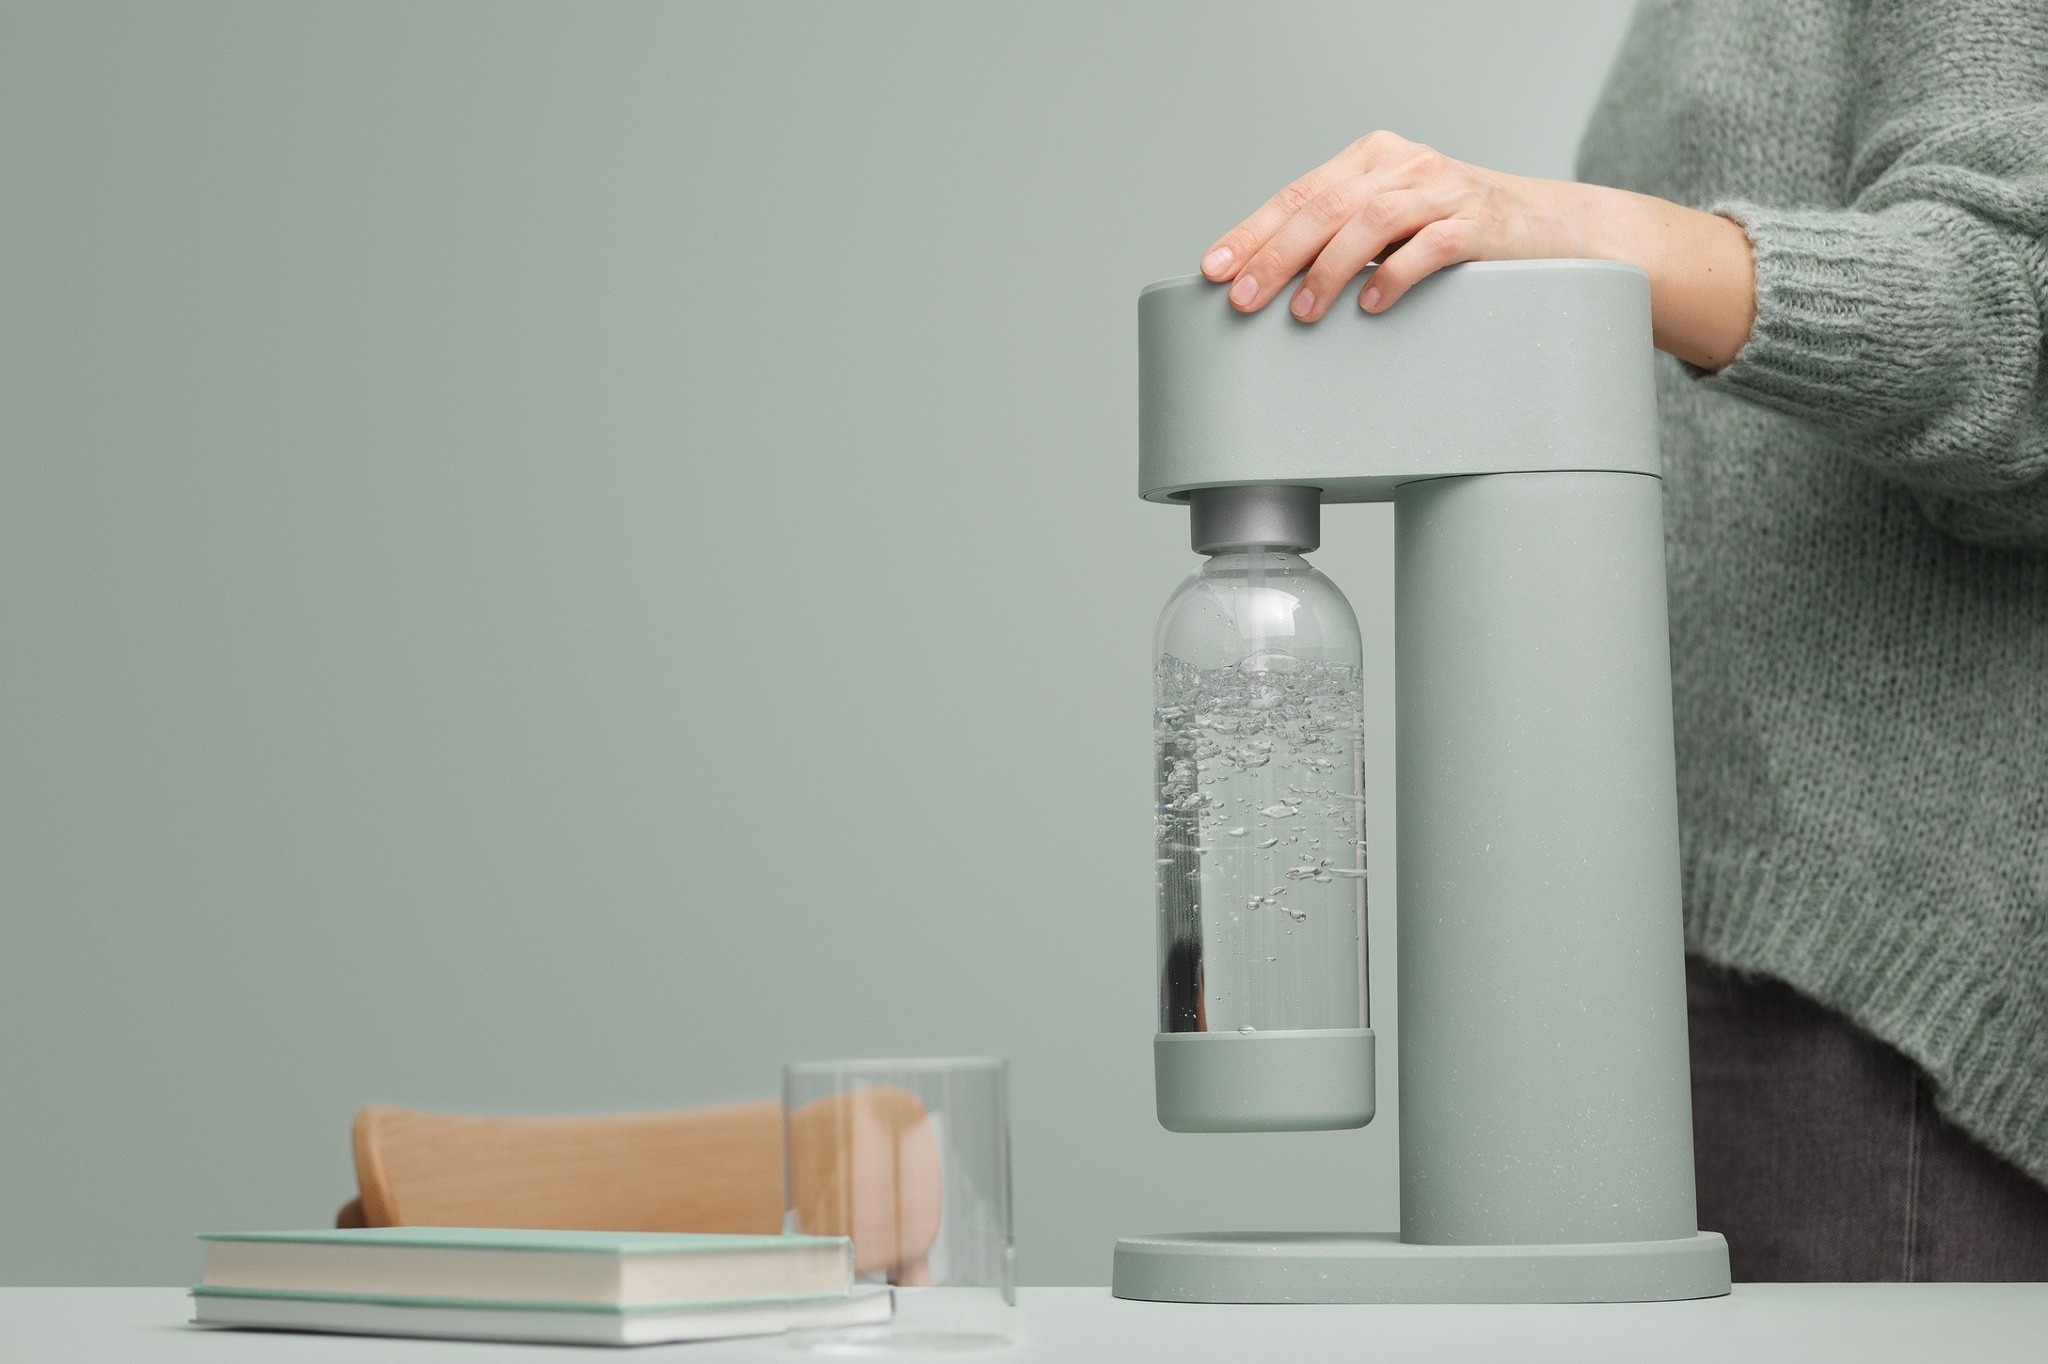 全球首款木質氣泡水機 北歐品牌Mysoda從機身到鋼瓶都永續